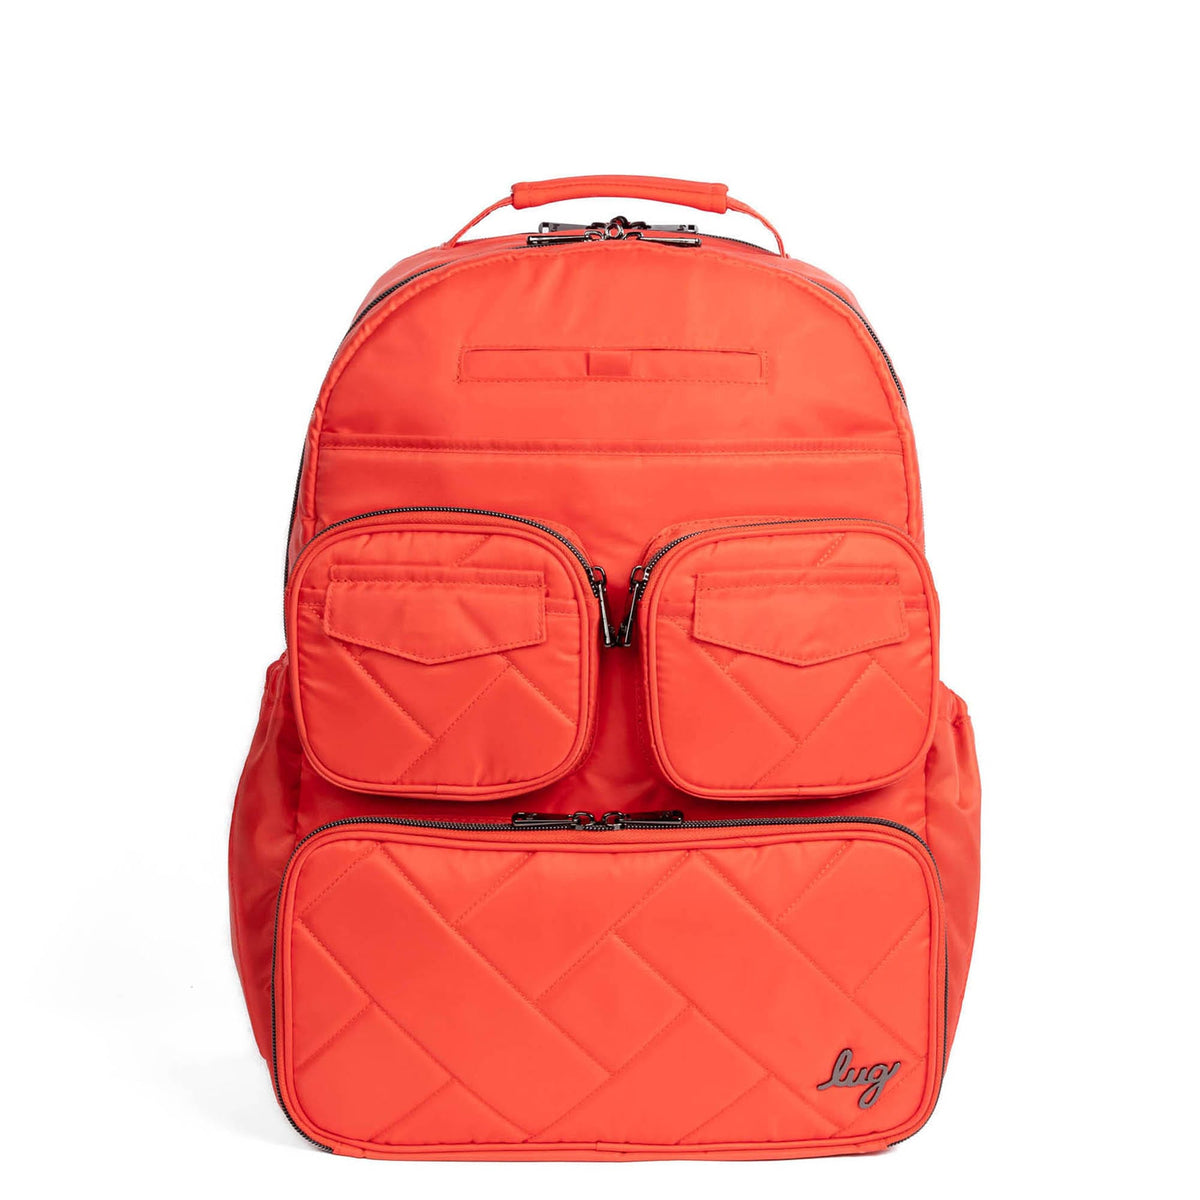 Puddle Jumper SE Backpack